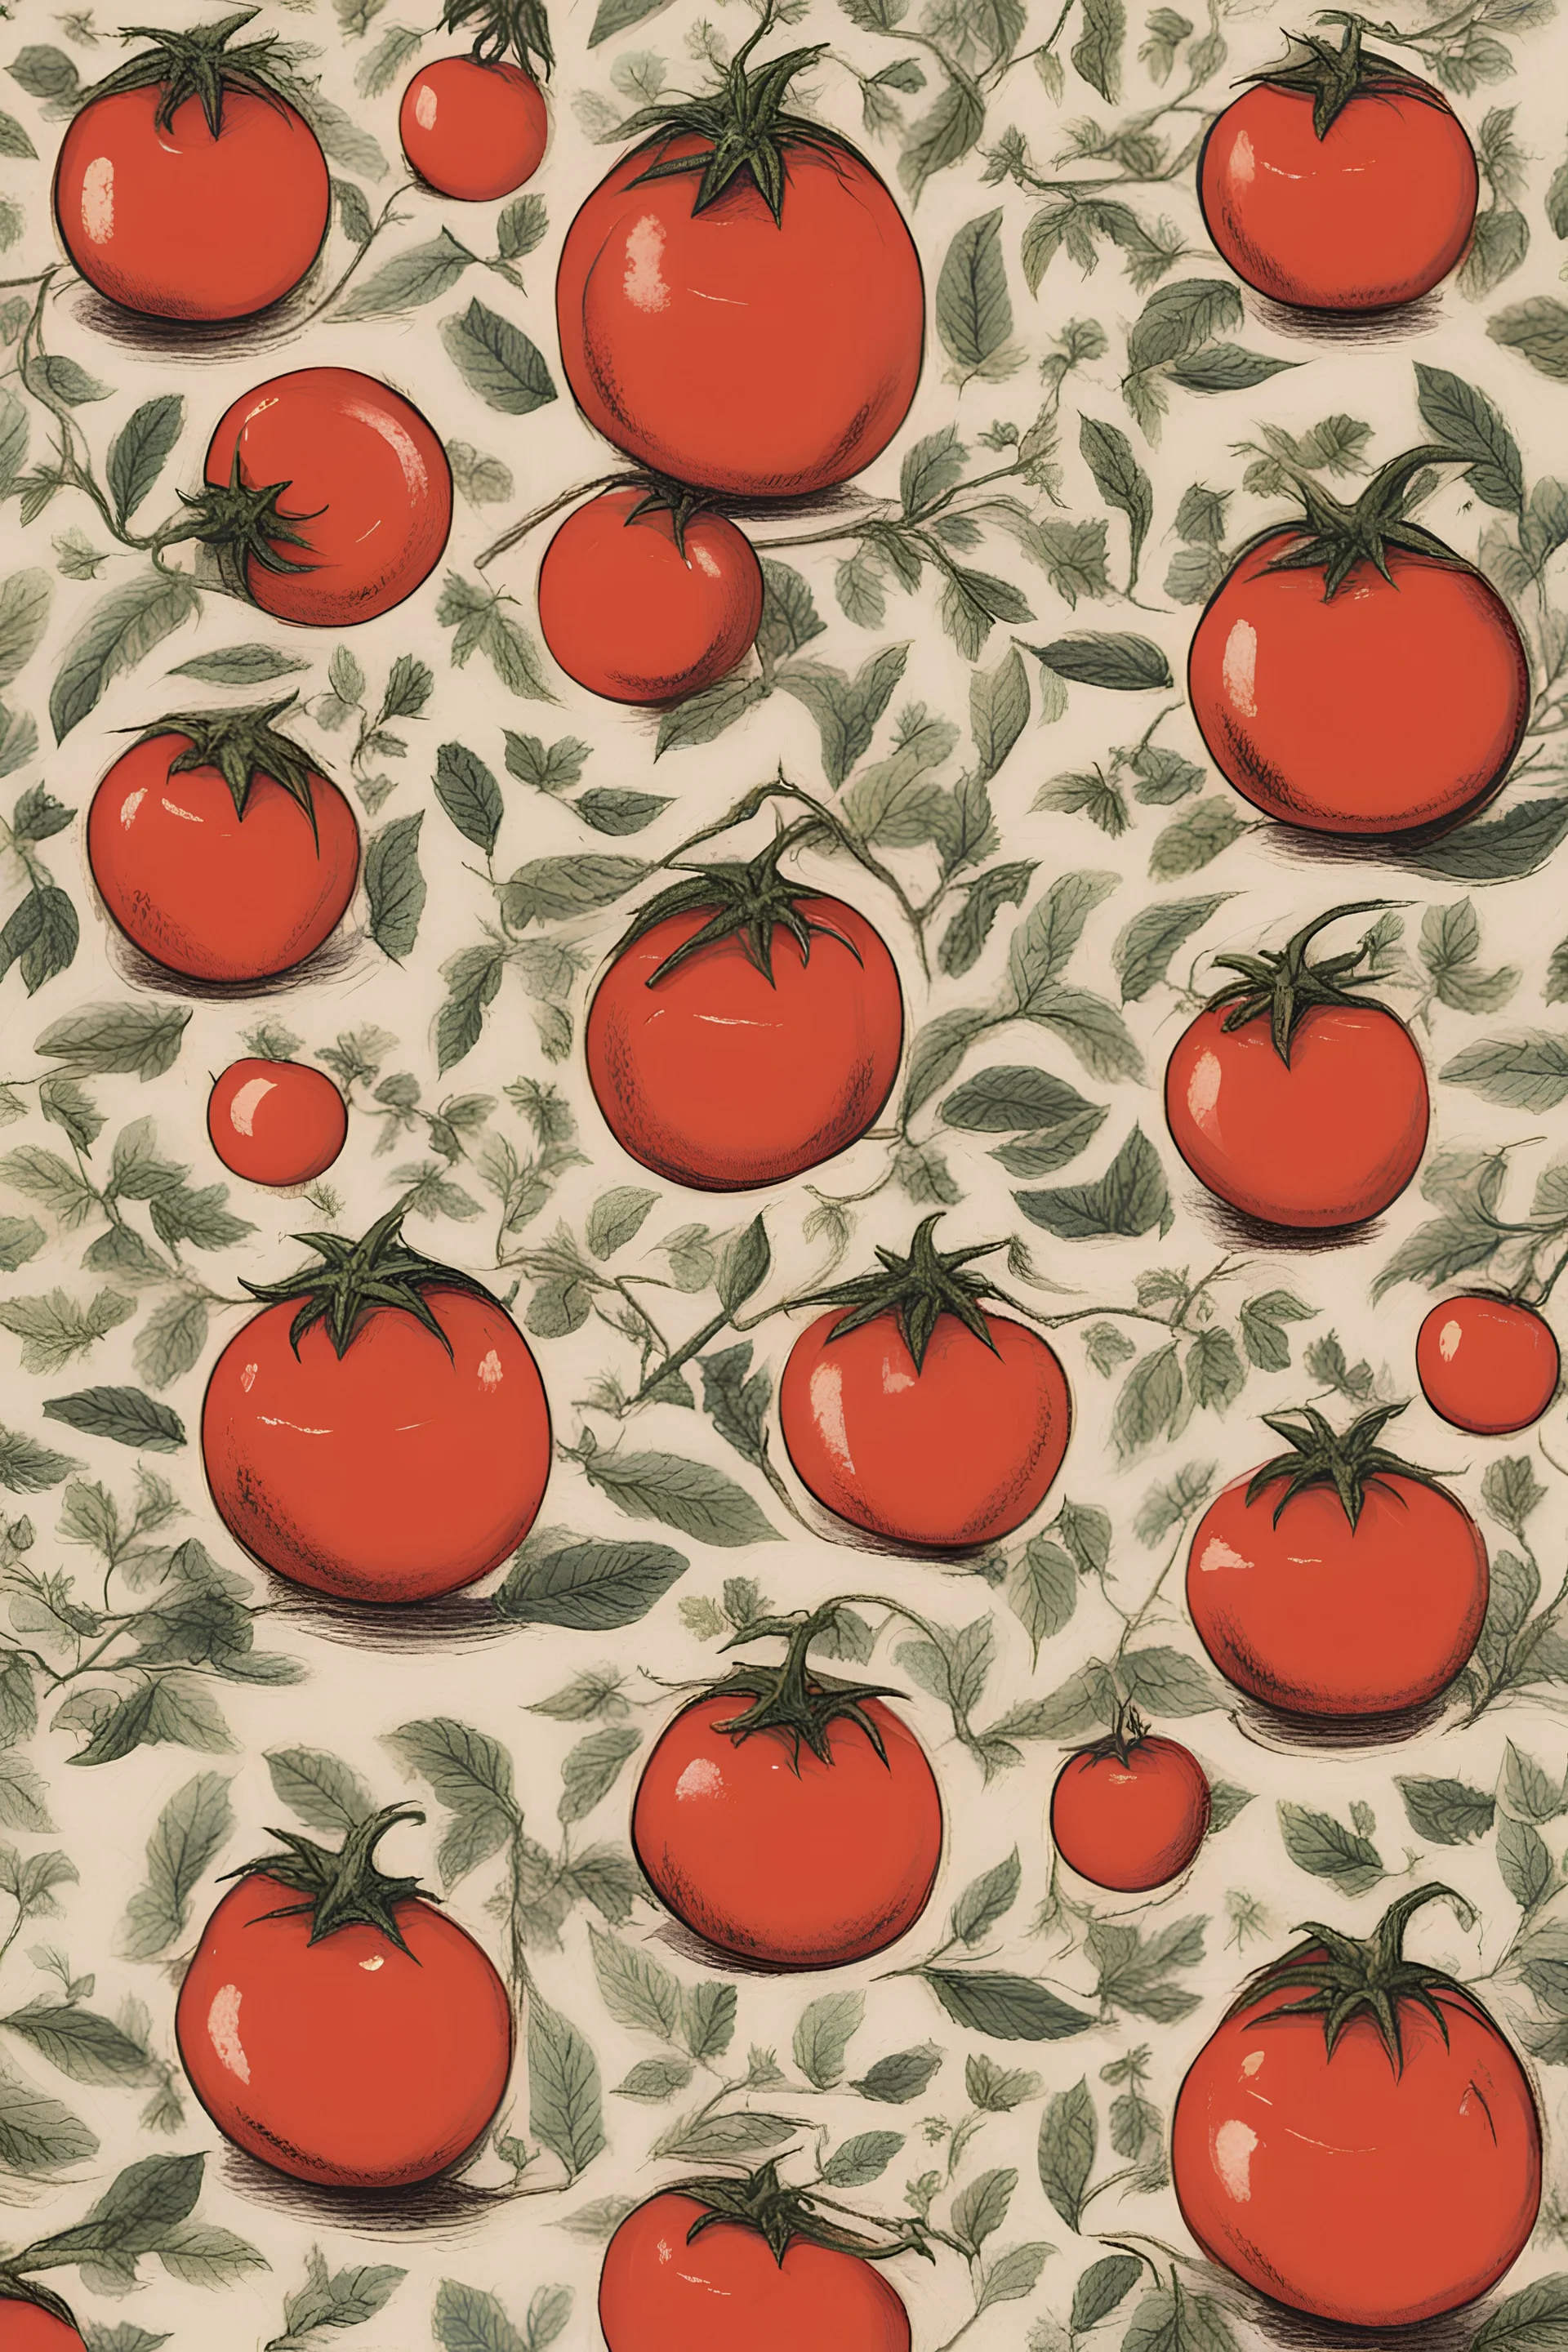 Kettle tomato